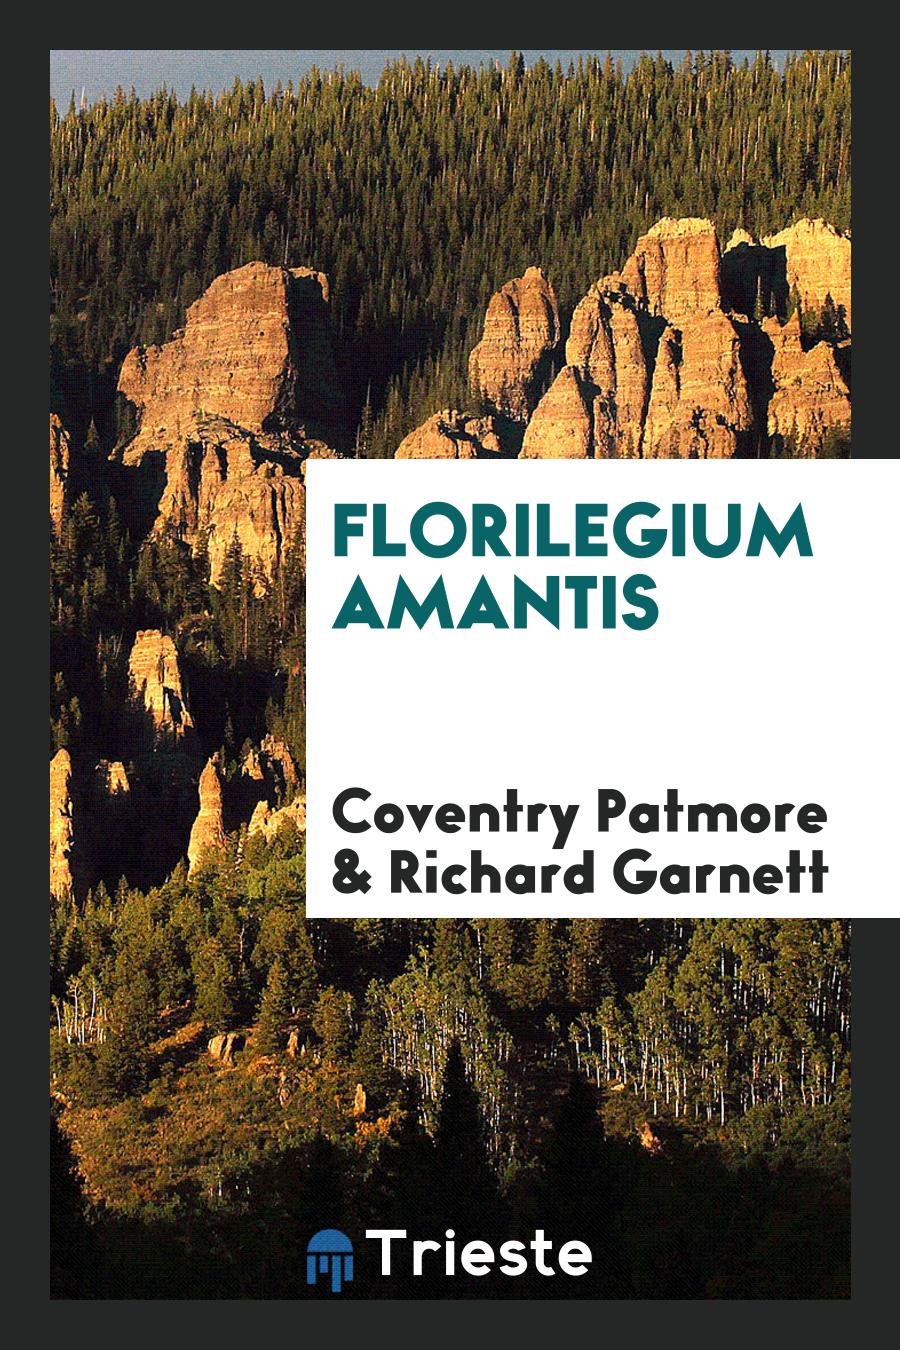 Florilegium amantis